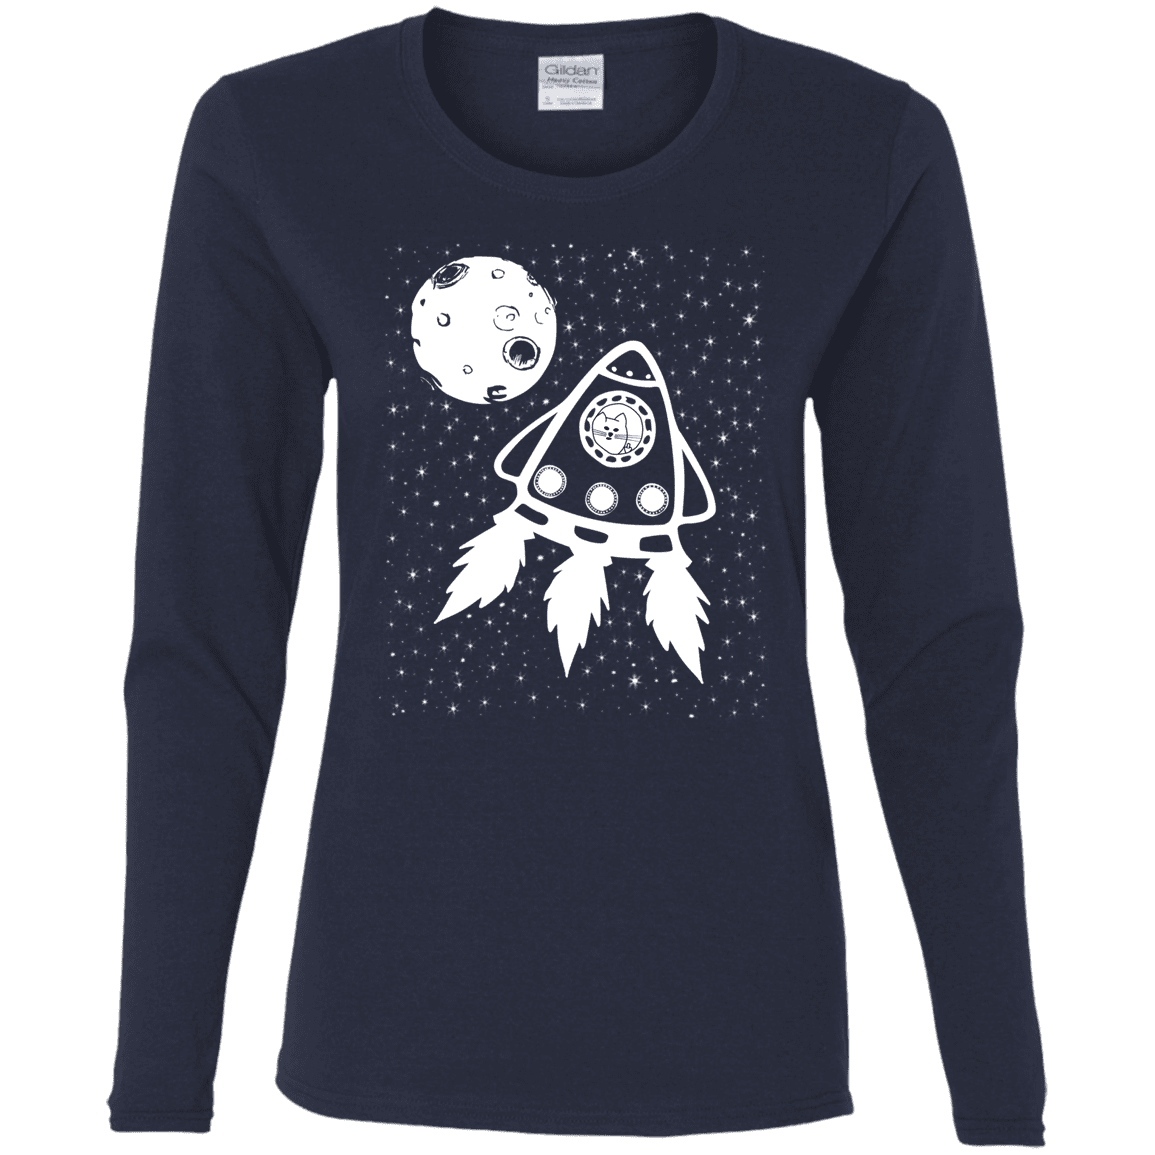 T-Shirts Navy / S Catstronaut Women's Long Sleeve T-Shirt